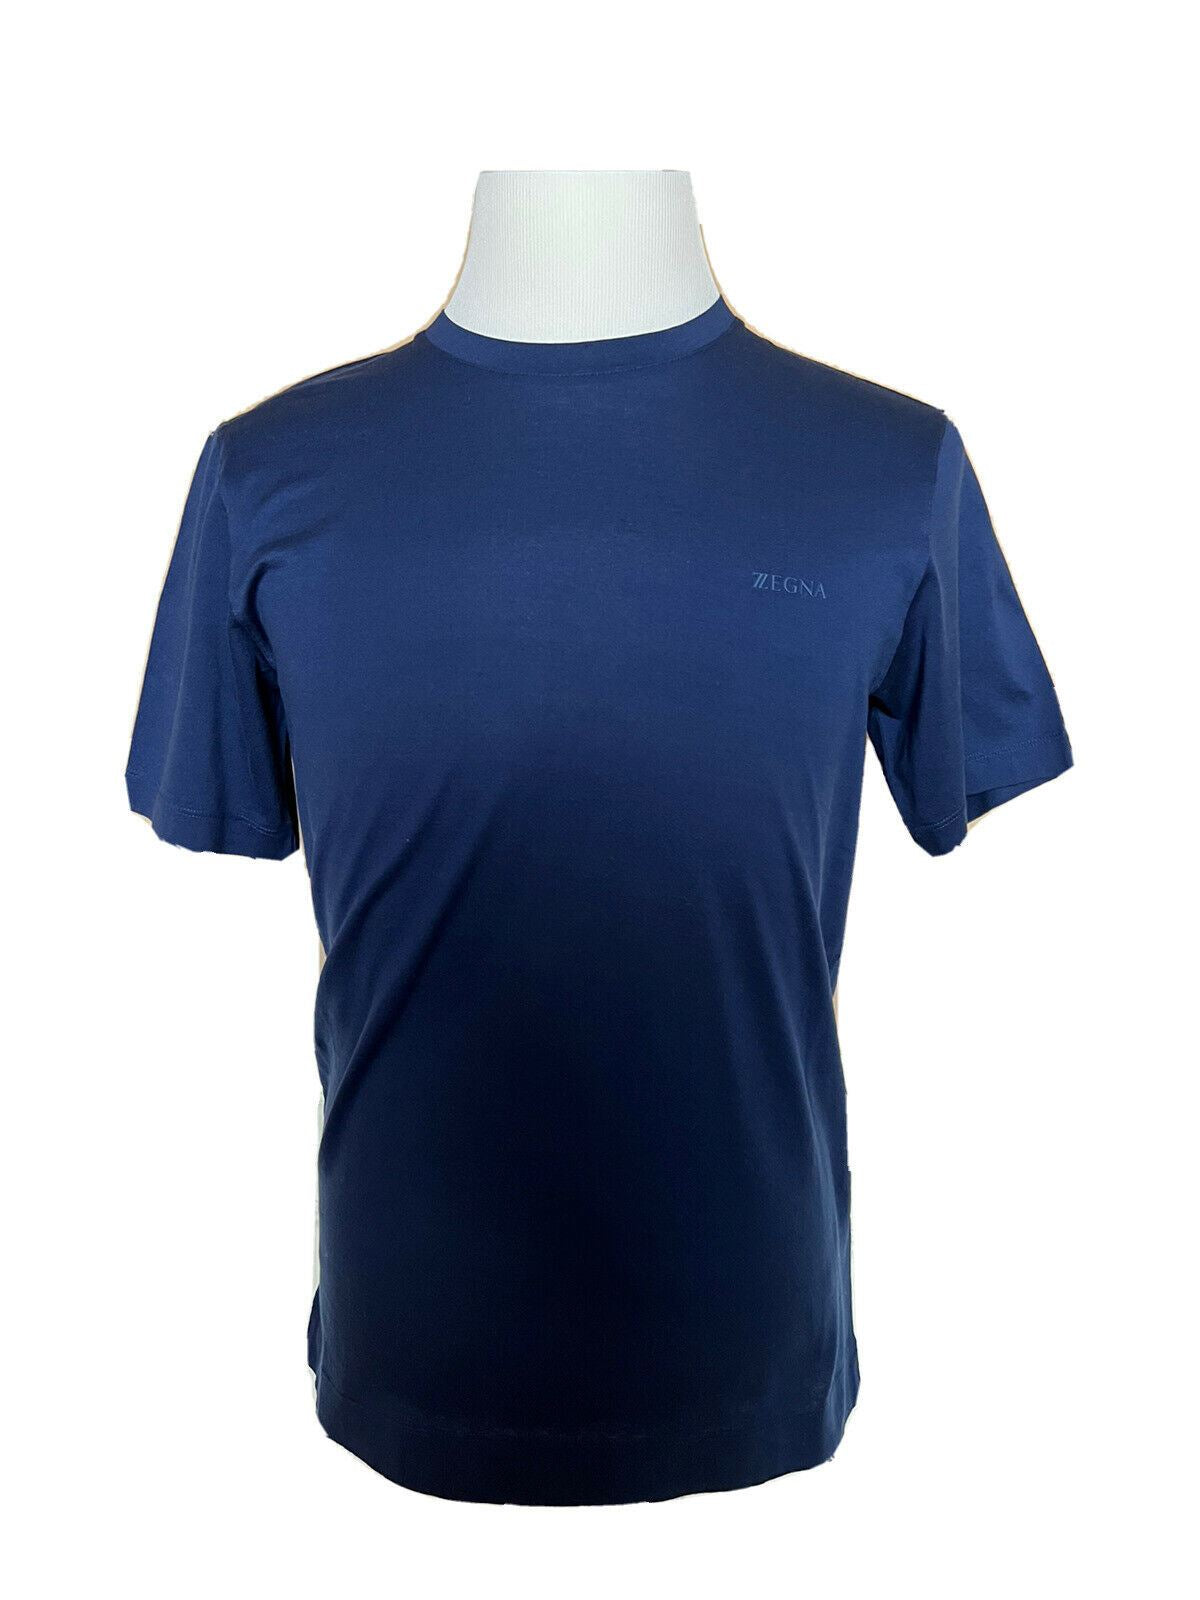 Синяя футболка с круглым вырезом NWT $325 ZZEGNA, маленькая ZZF630